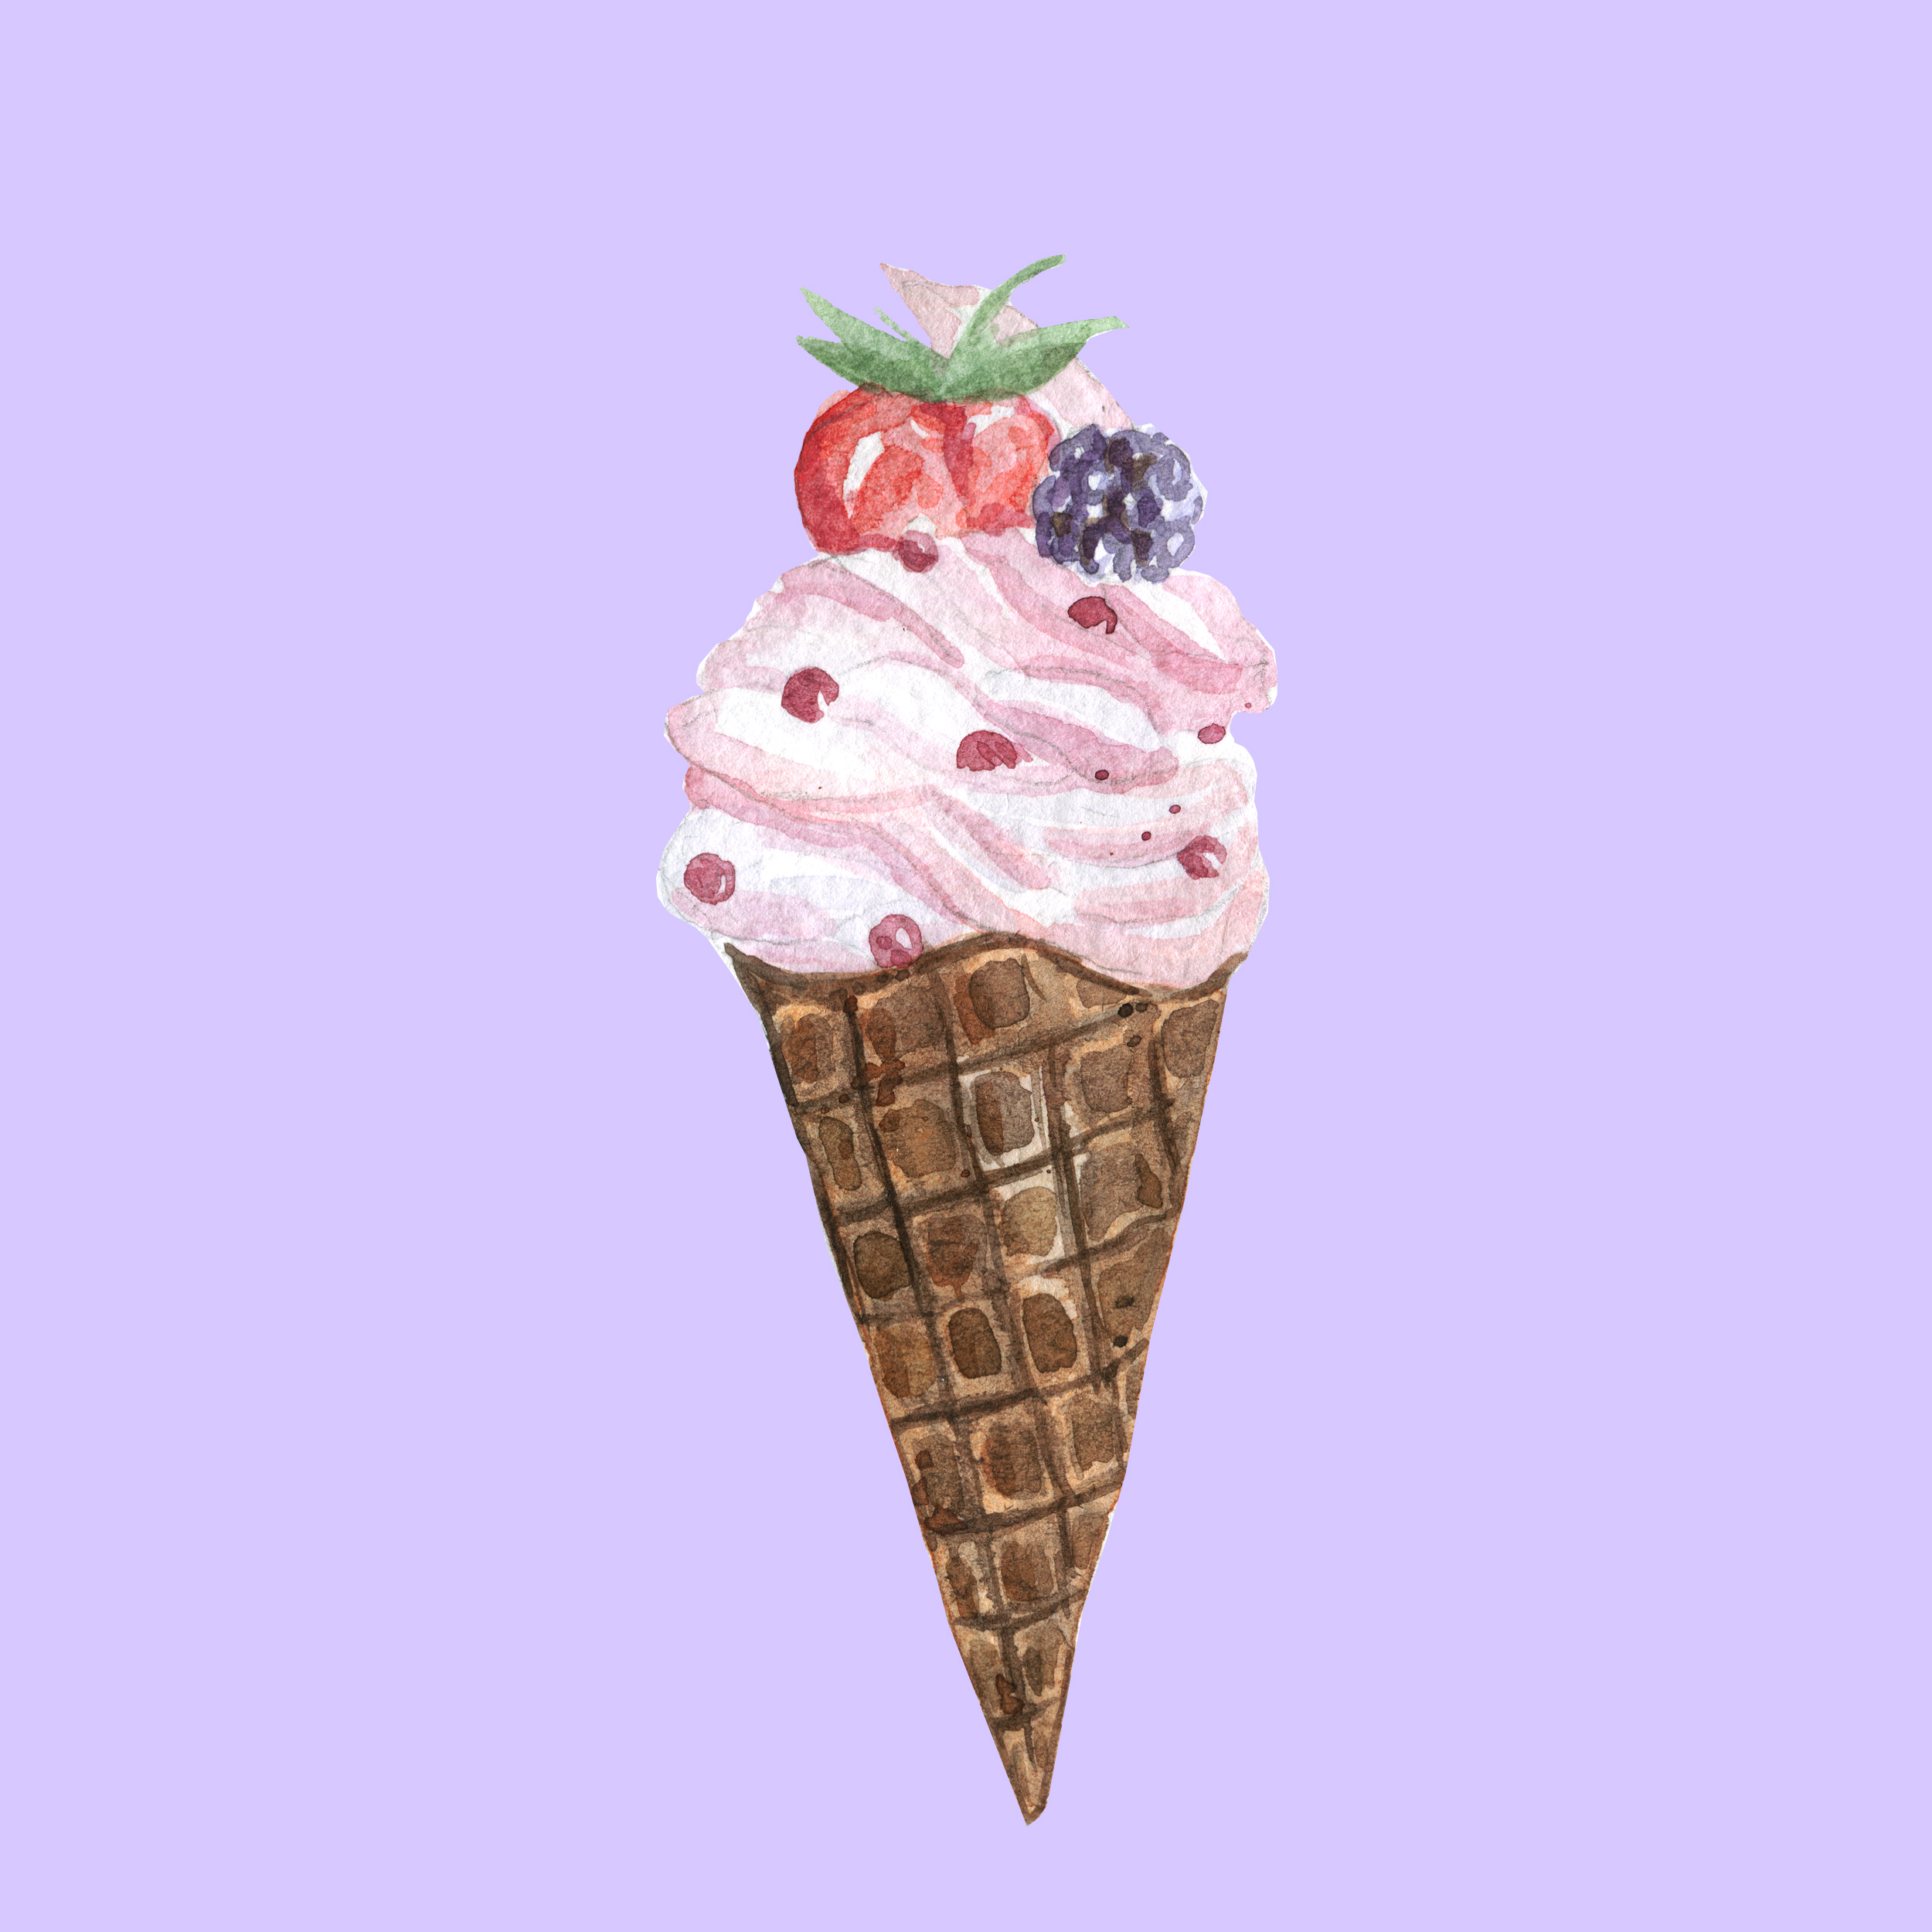 Иллюстрация мороженое в стиле 2д